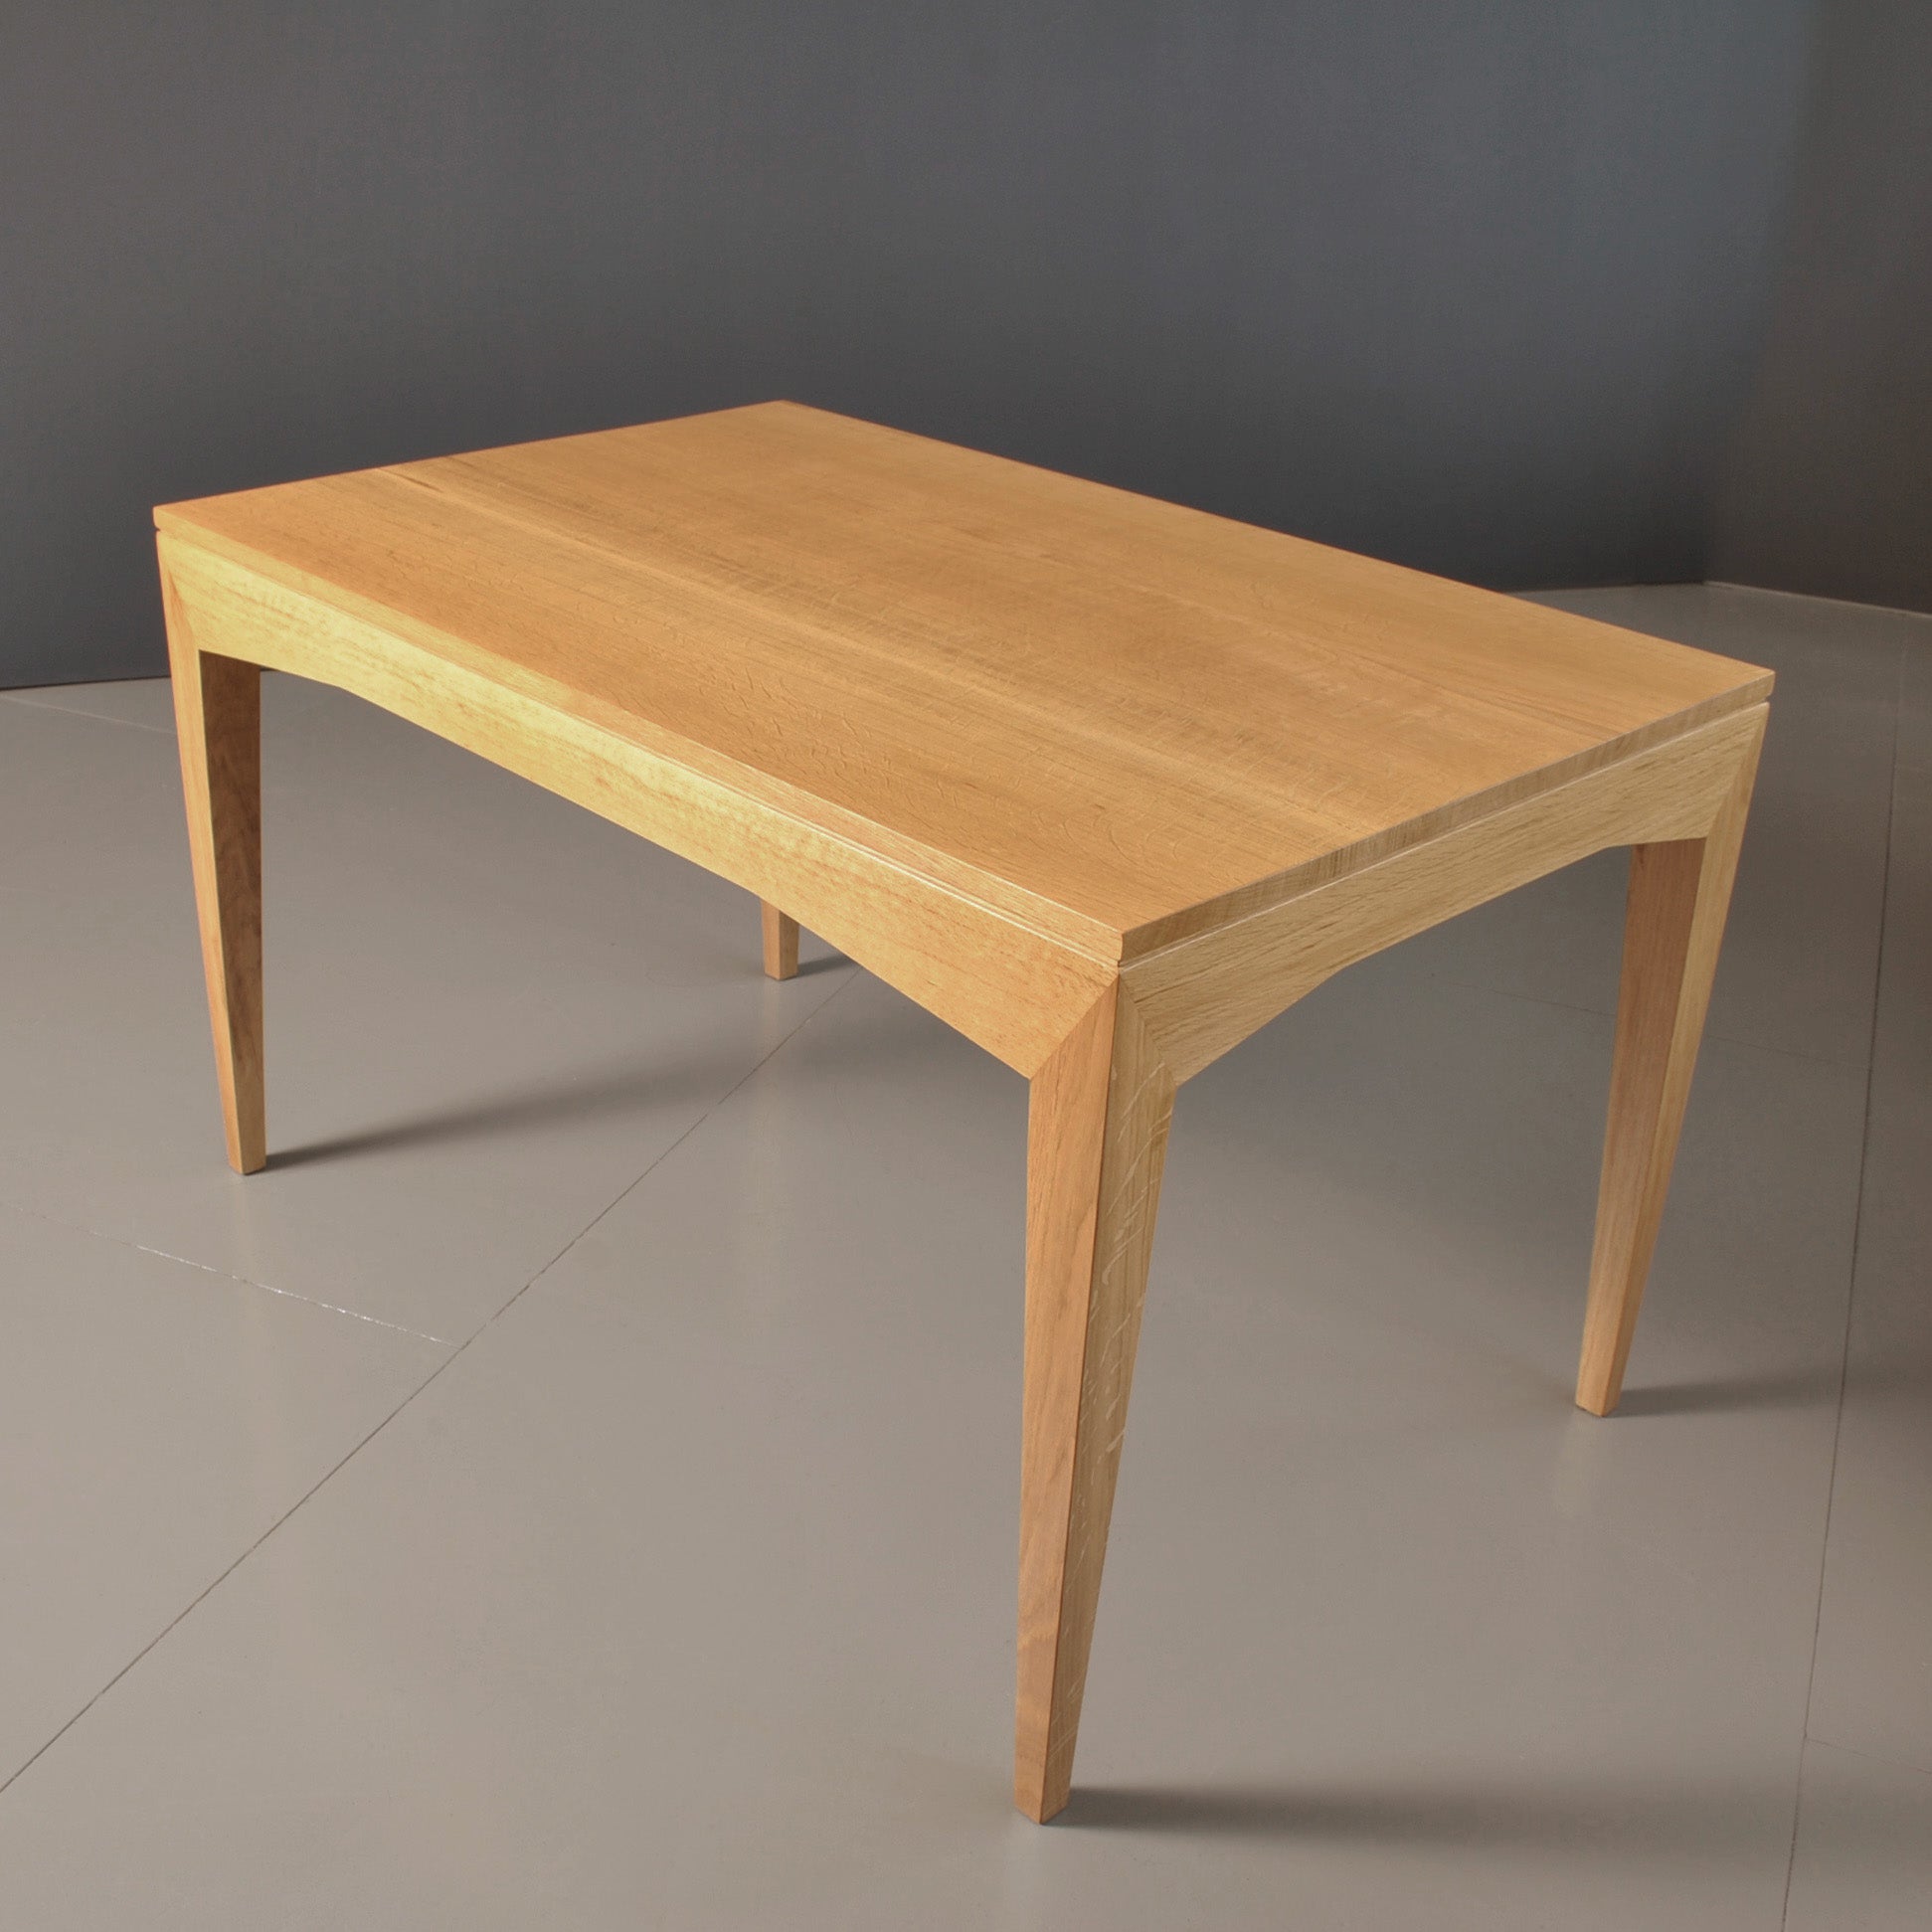 Handcrafted Modernist Desk Table English Oak